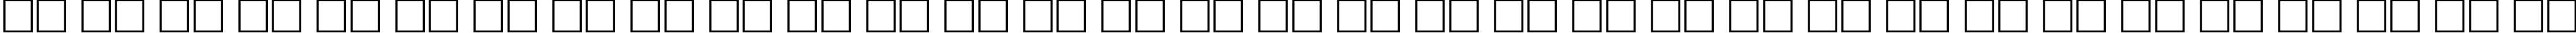 Пример написания русского алфавита шрифтом Kringle Regular